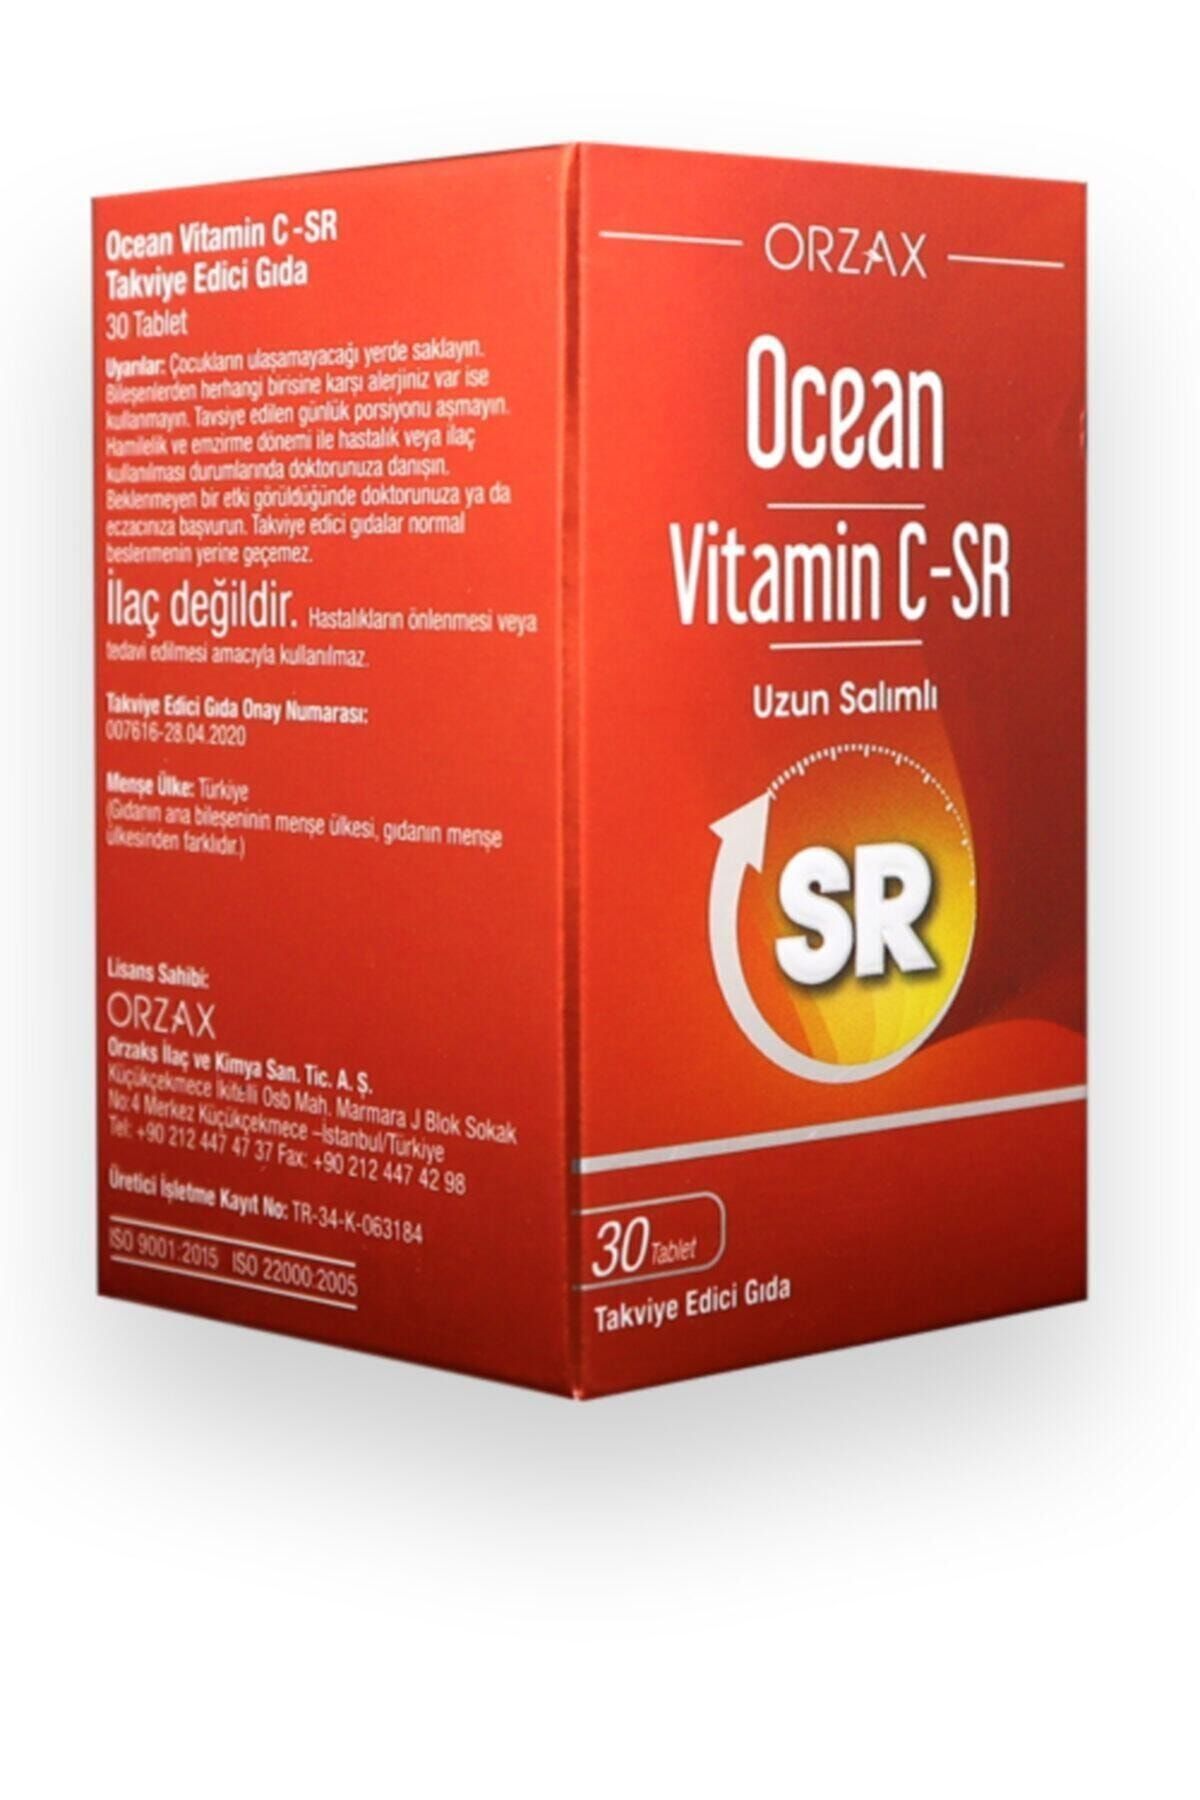 Orzax Ocean Vitamin C Sr 30 Tablet